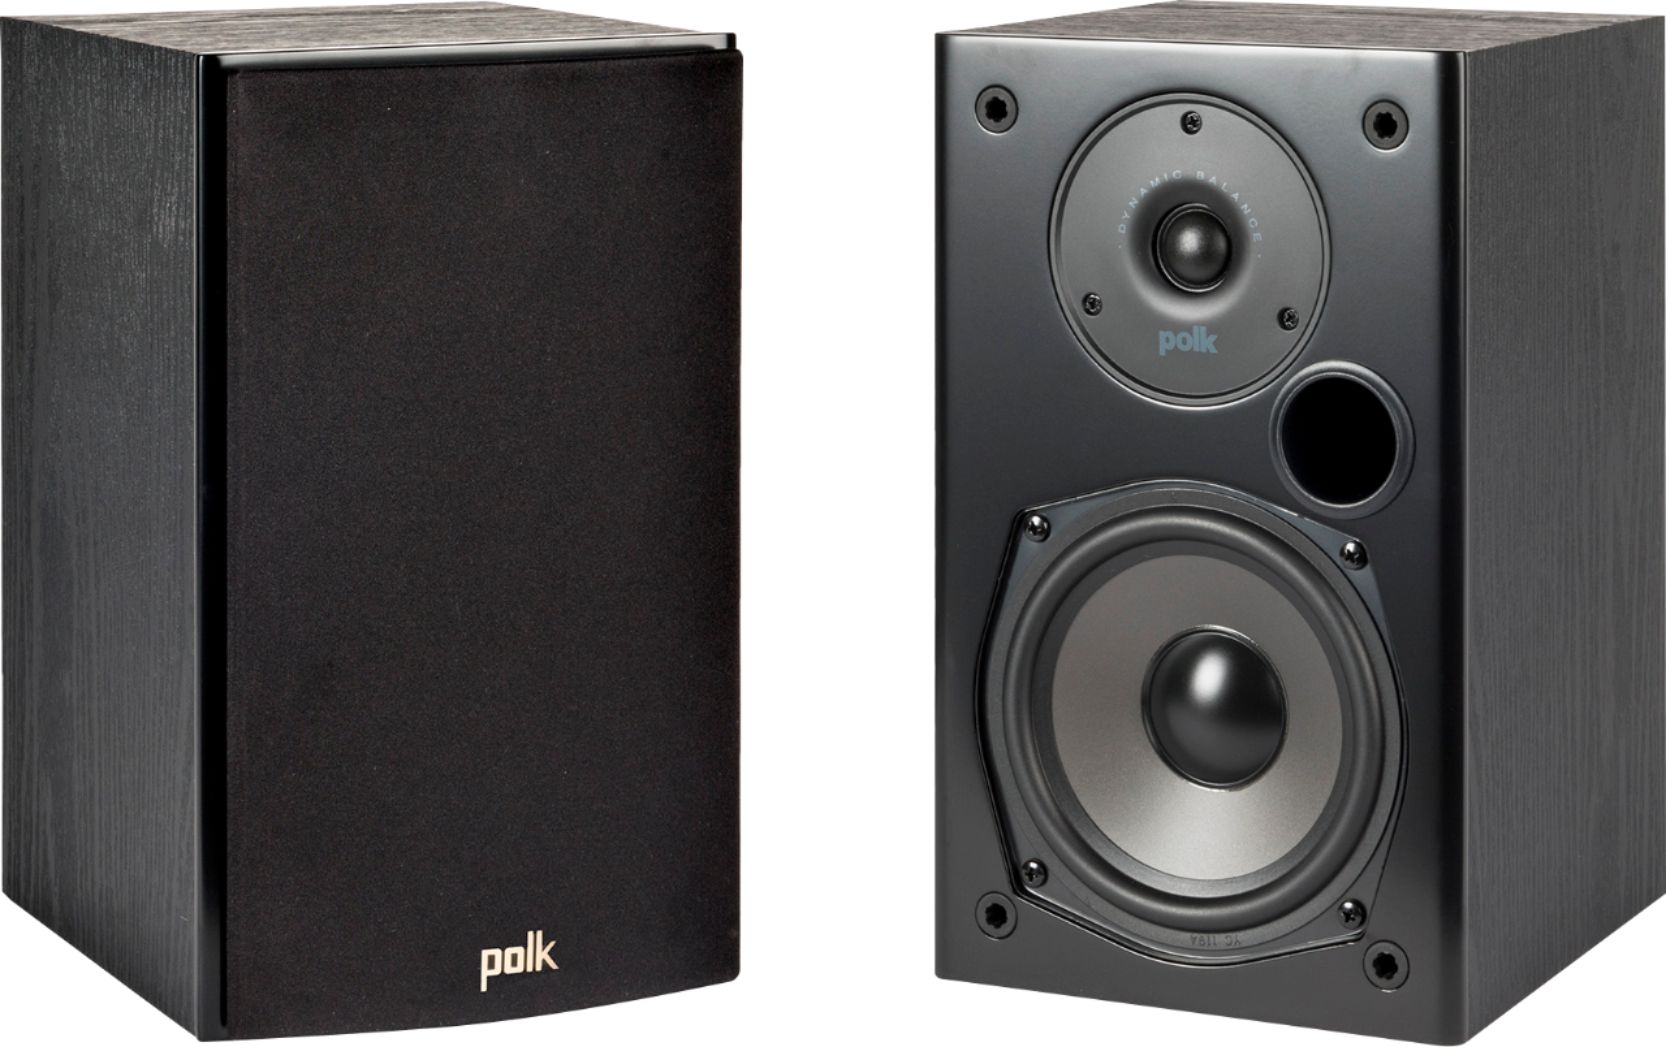 Polk Audio T15 Bookshelf Speakers $80 per pair